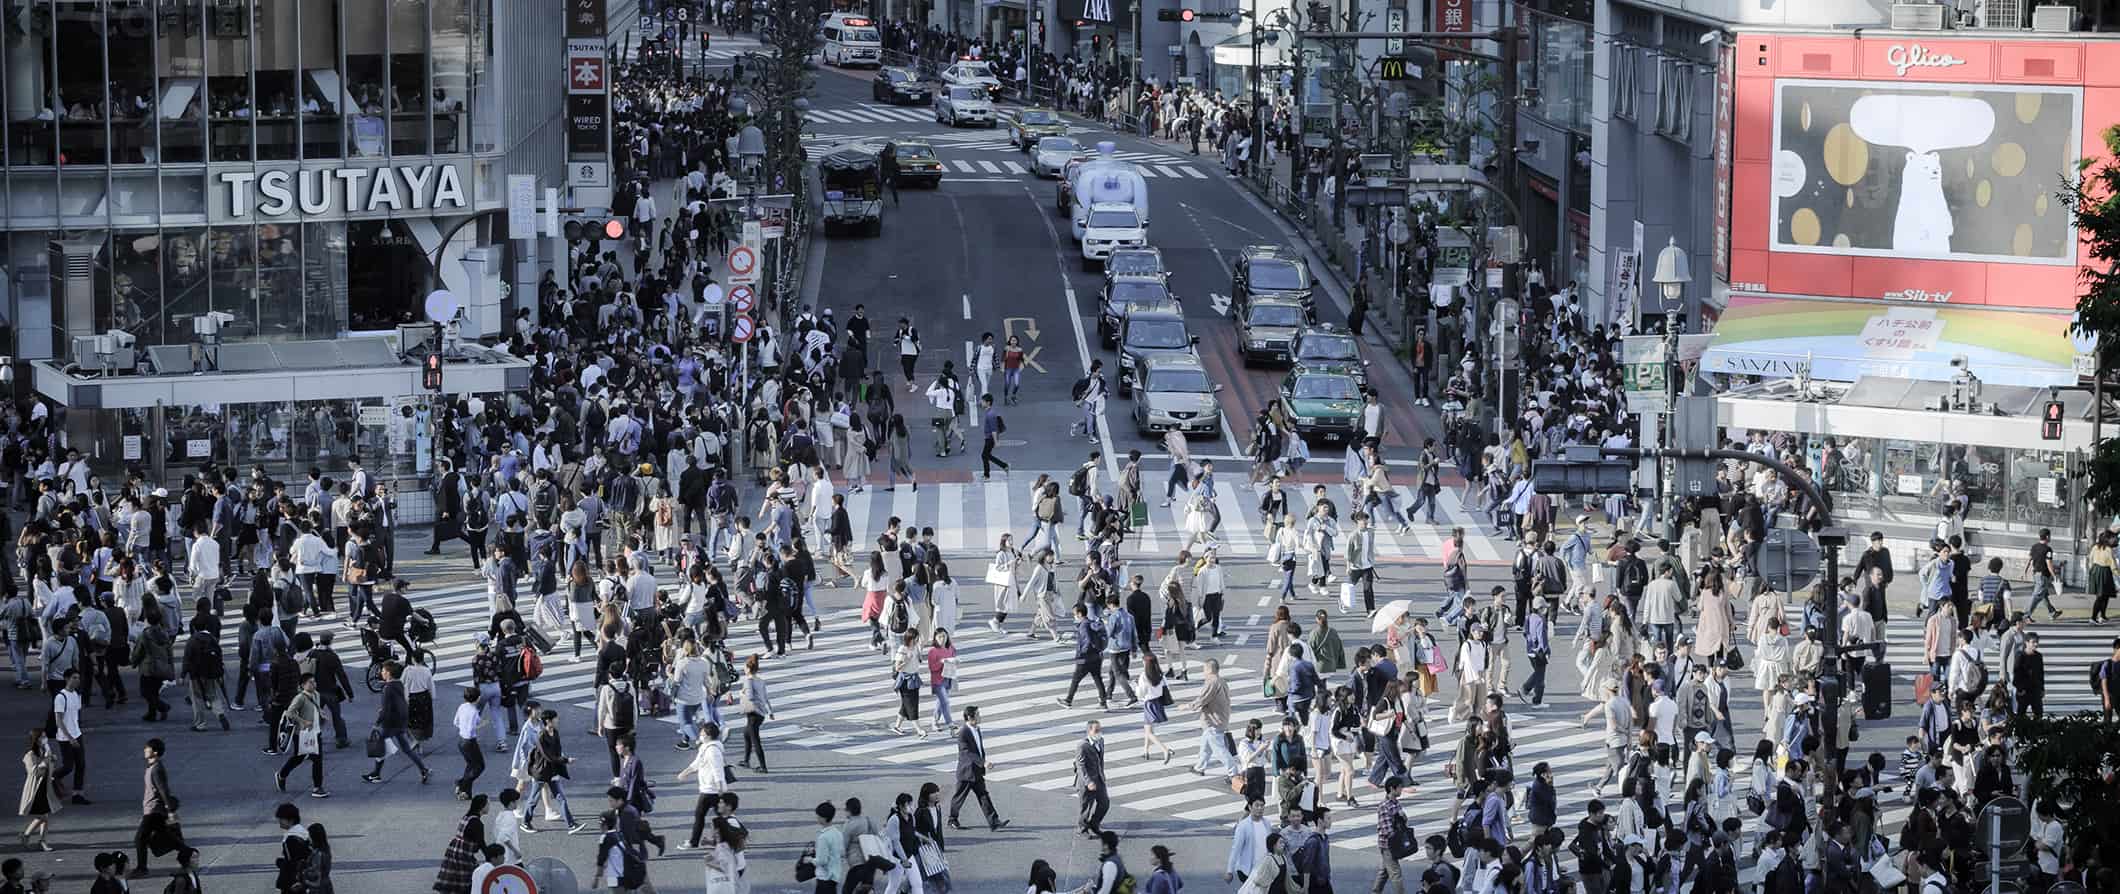 Interseção movimentada em Tóquio, Japão: milhares de pessoas atravessam a rua